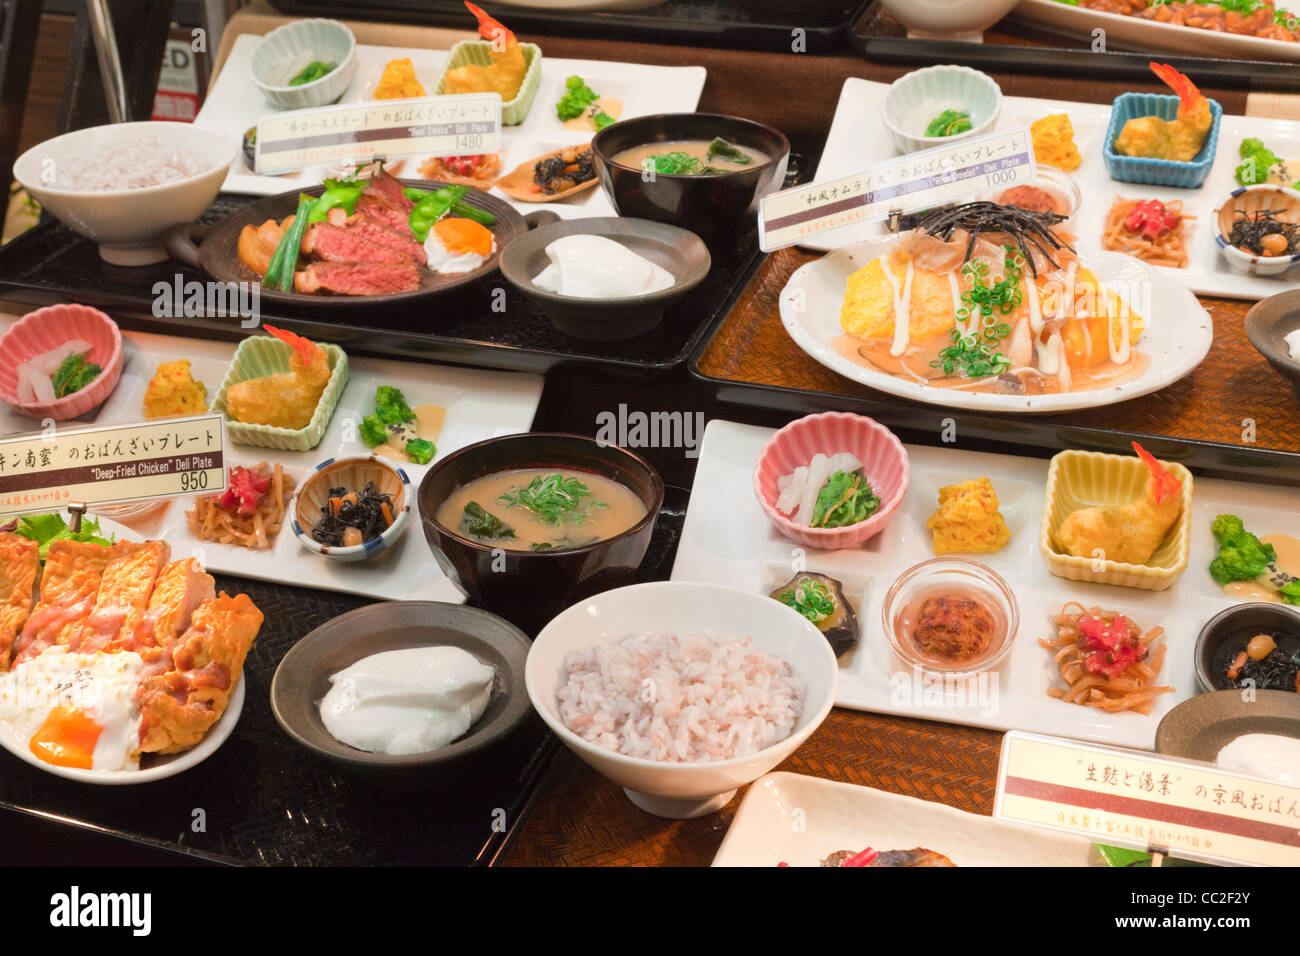 Réplica o plástico imitación de alimentos, fuera de un restaurante en Japón. Foto de stock